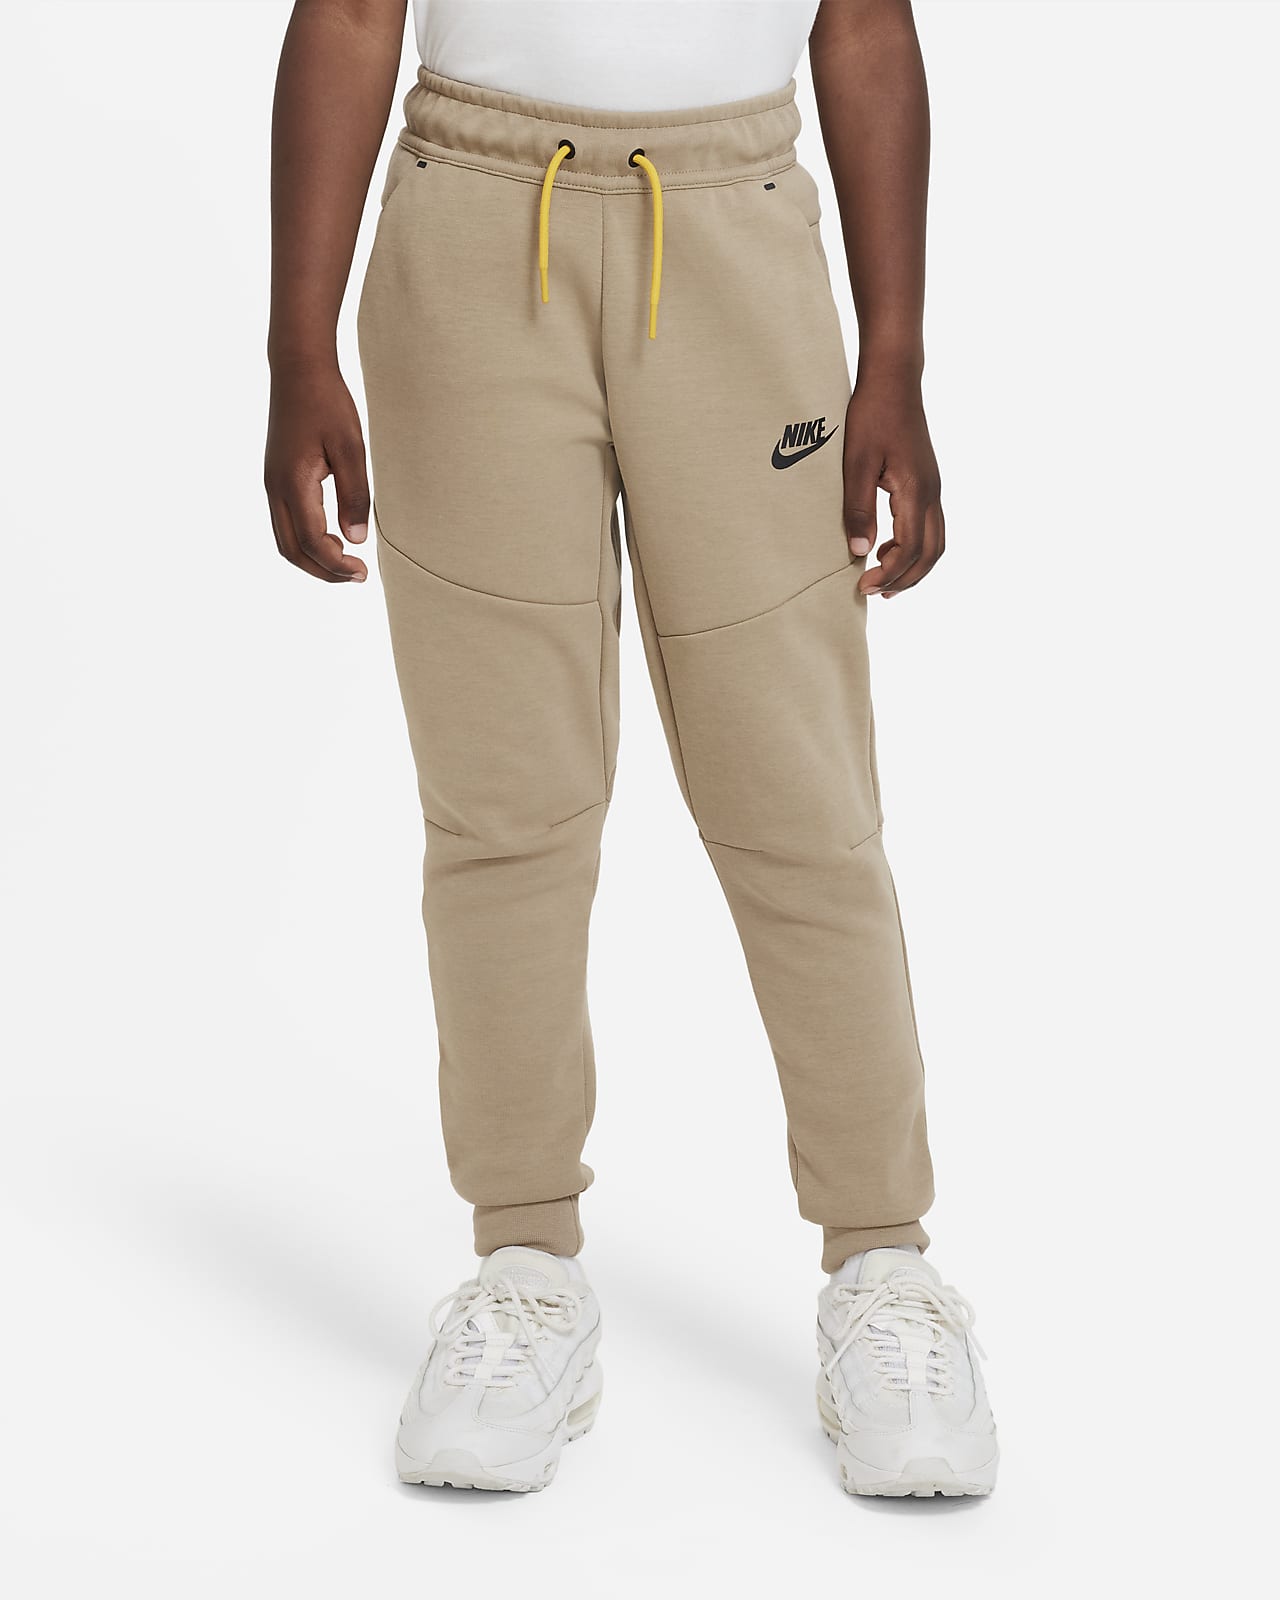 Nike Sportswear Tech Fleece Big Kids (Boys') Pants